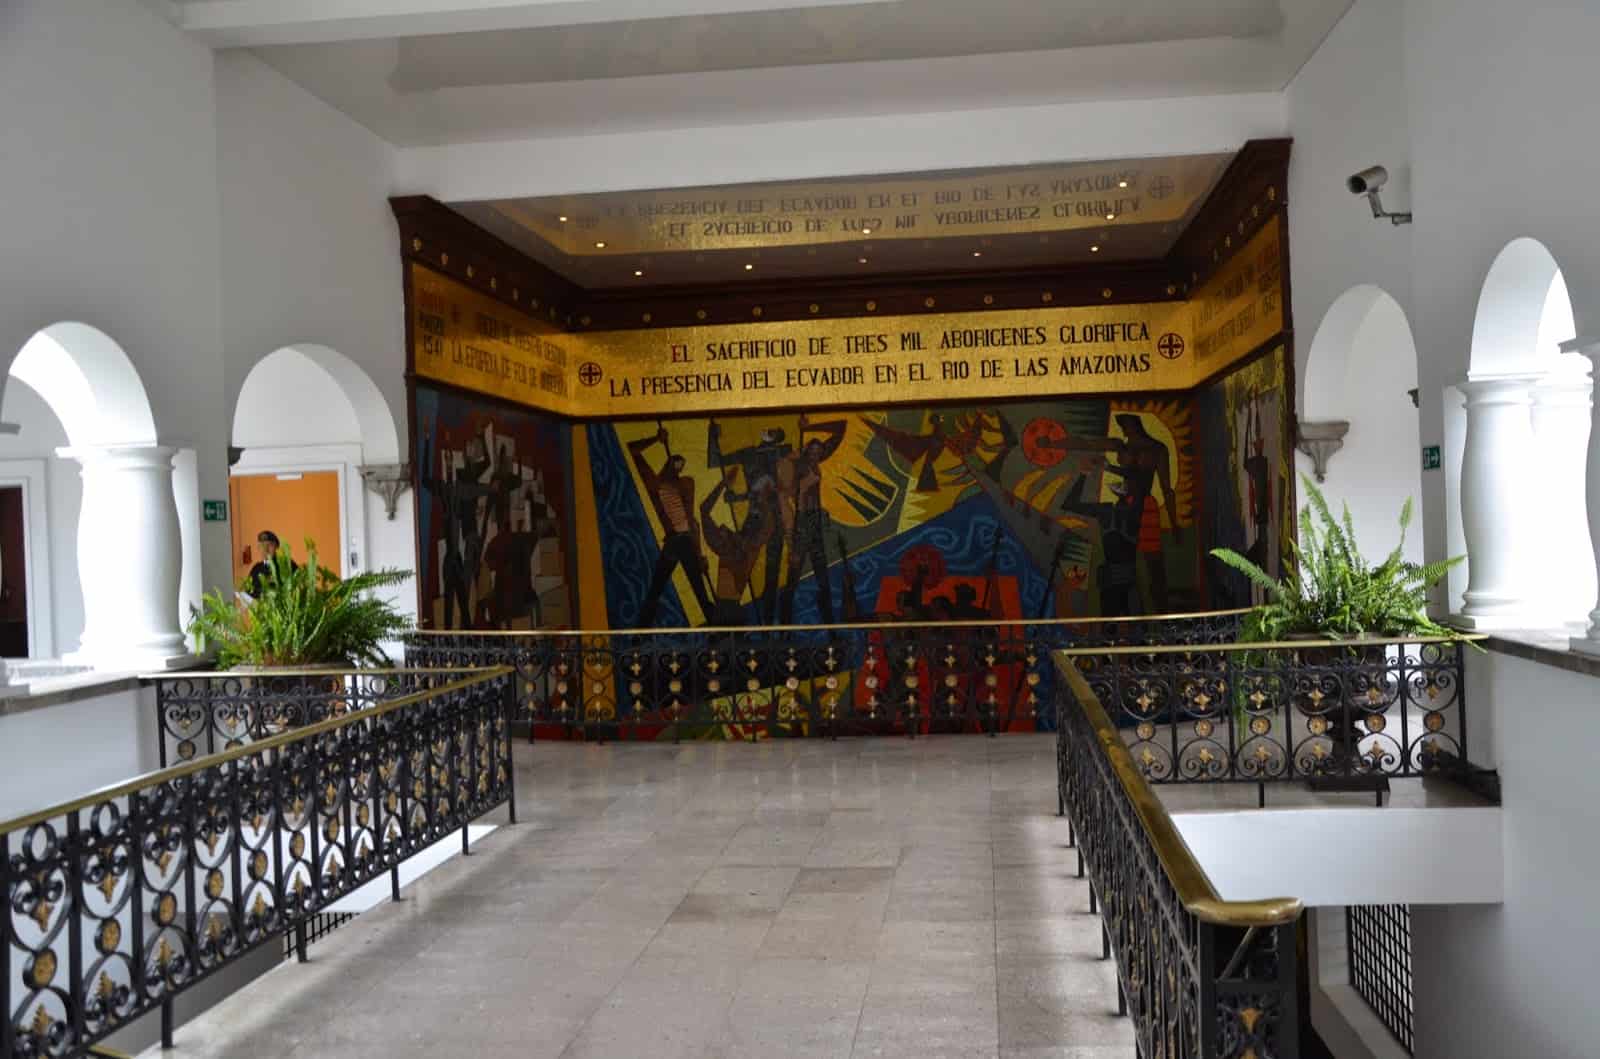 Mosaic by Oswaldo Guayasamín at Palacio de Carondelet on Plaza Grande in Quito, Ecuador